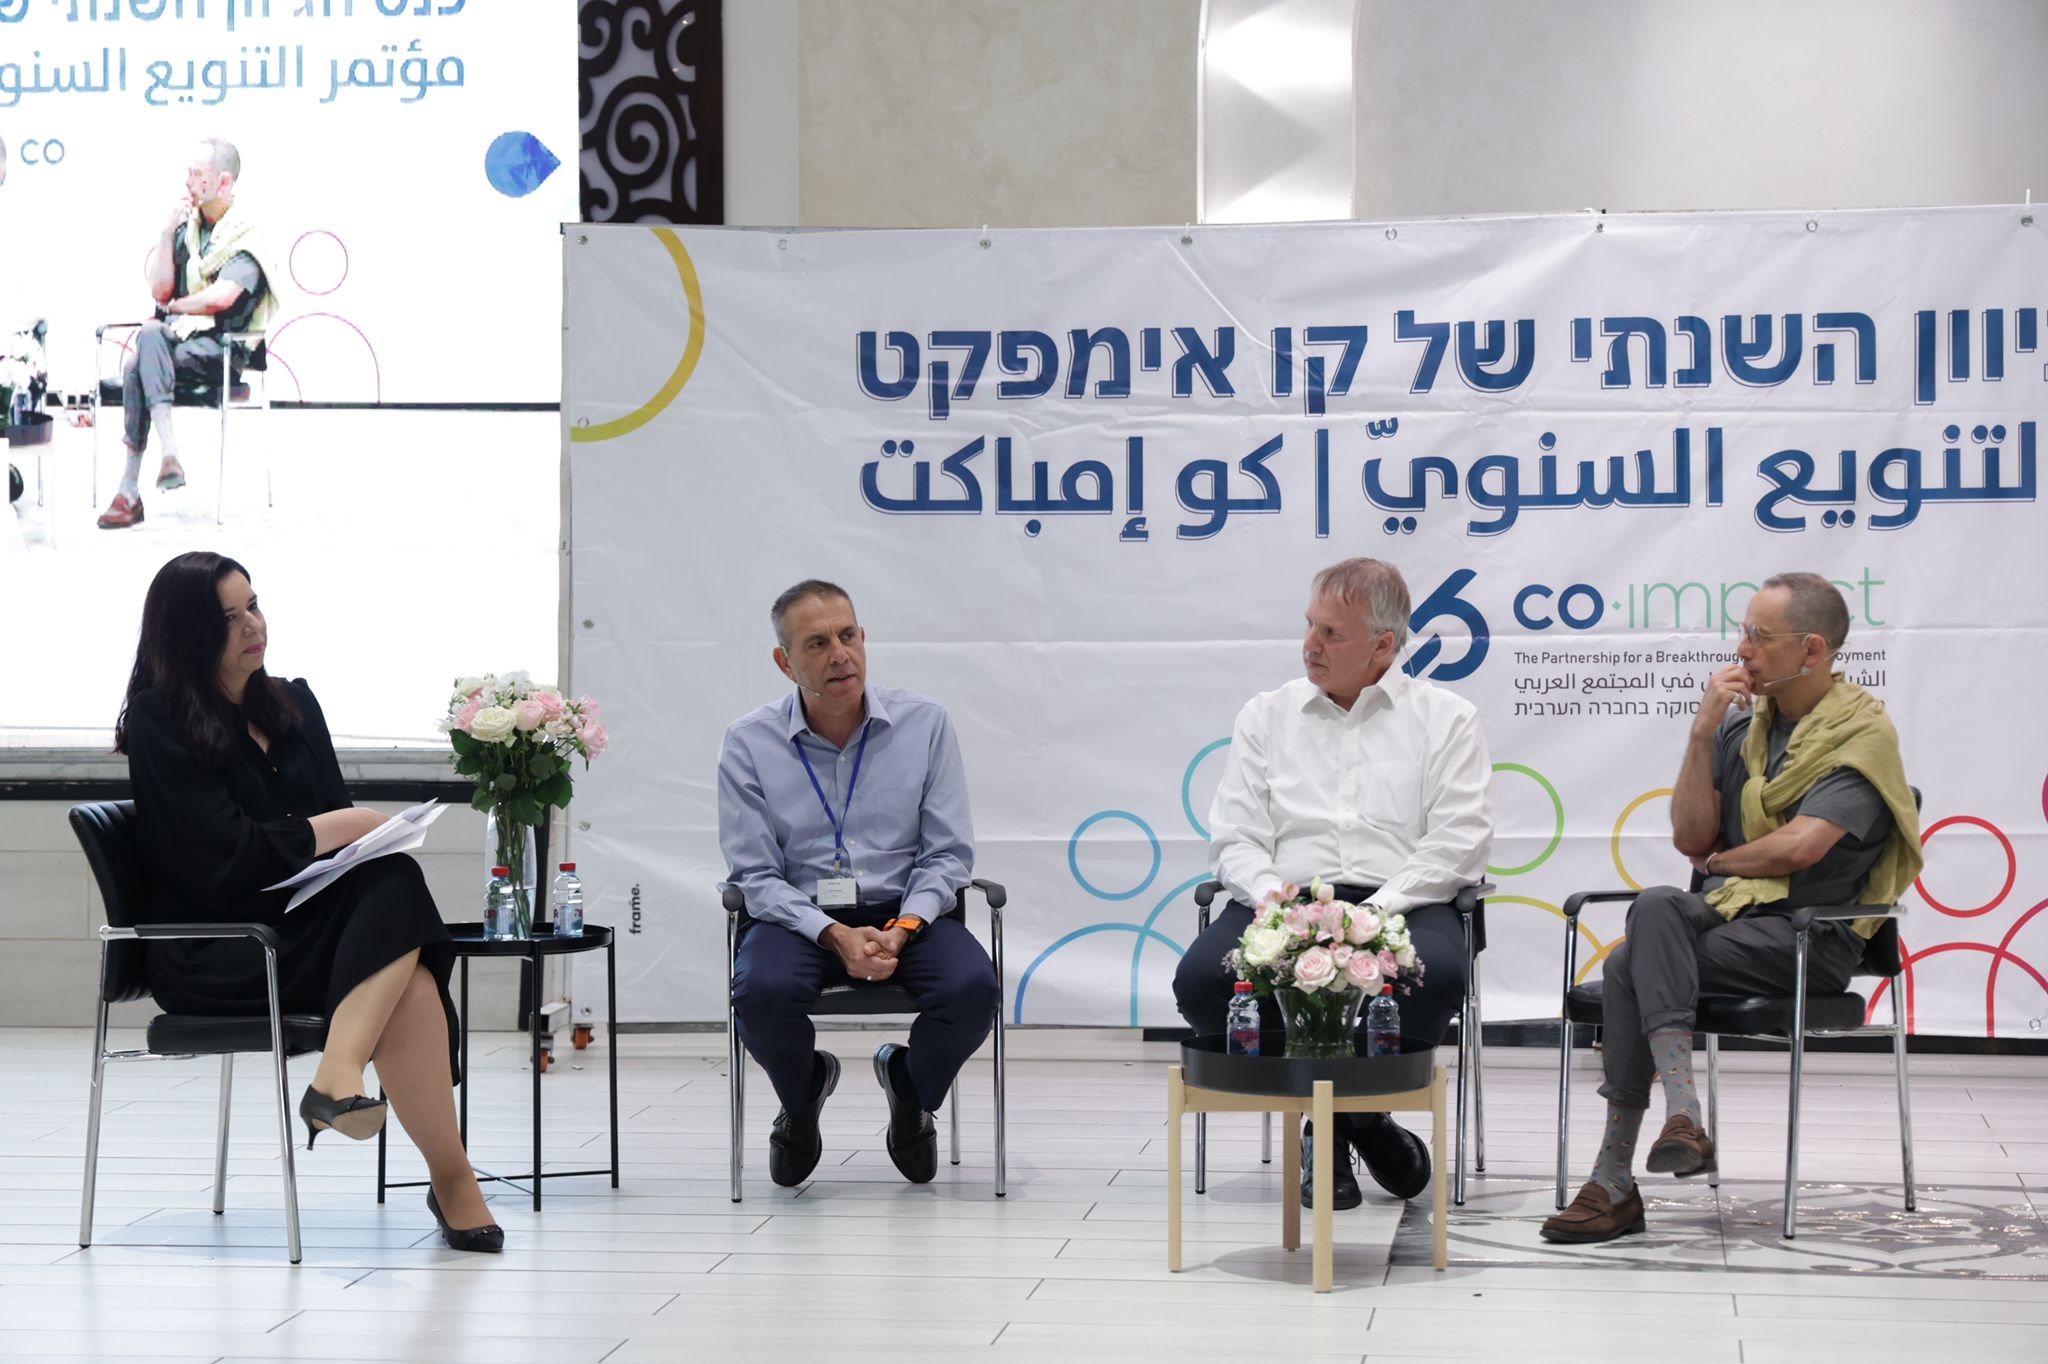 "كو إمبكت" تختتم مؤتمر التنويع السنوي الهادف الى تعزيز شراكة ودمج العرب في القطاعات المختلفة-9